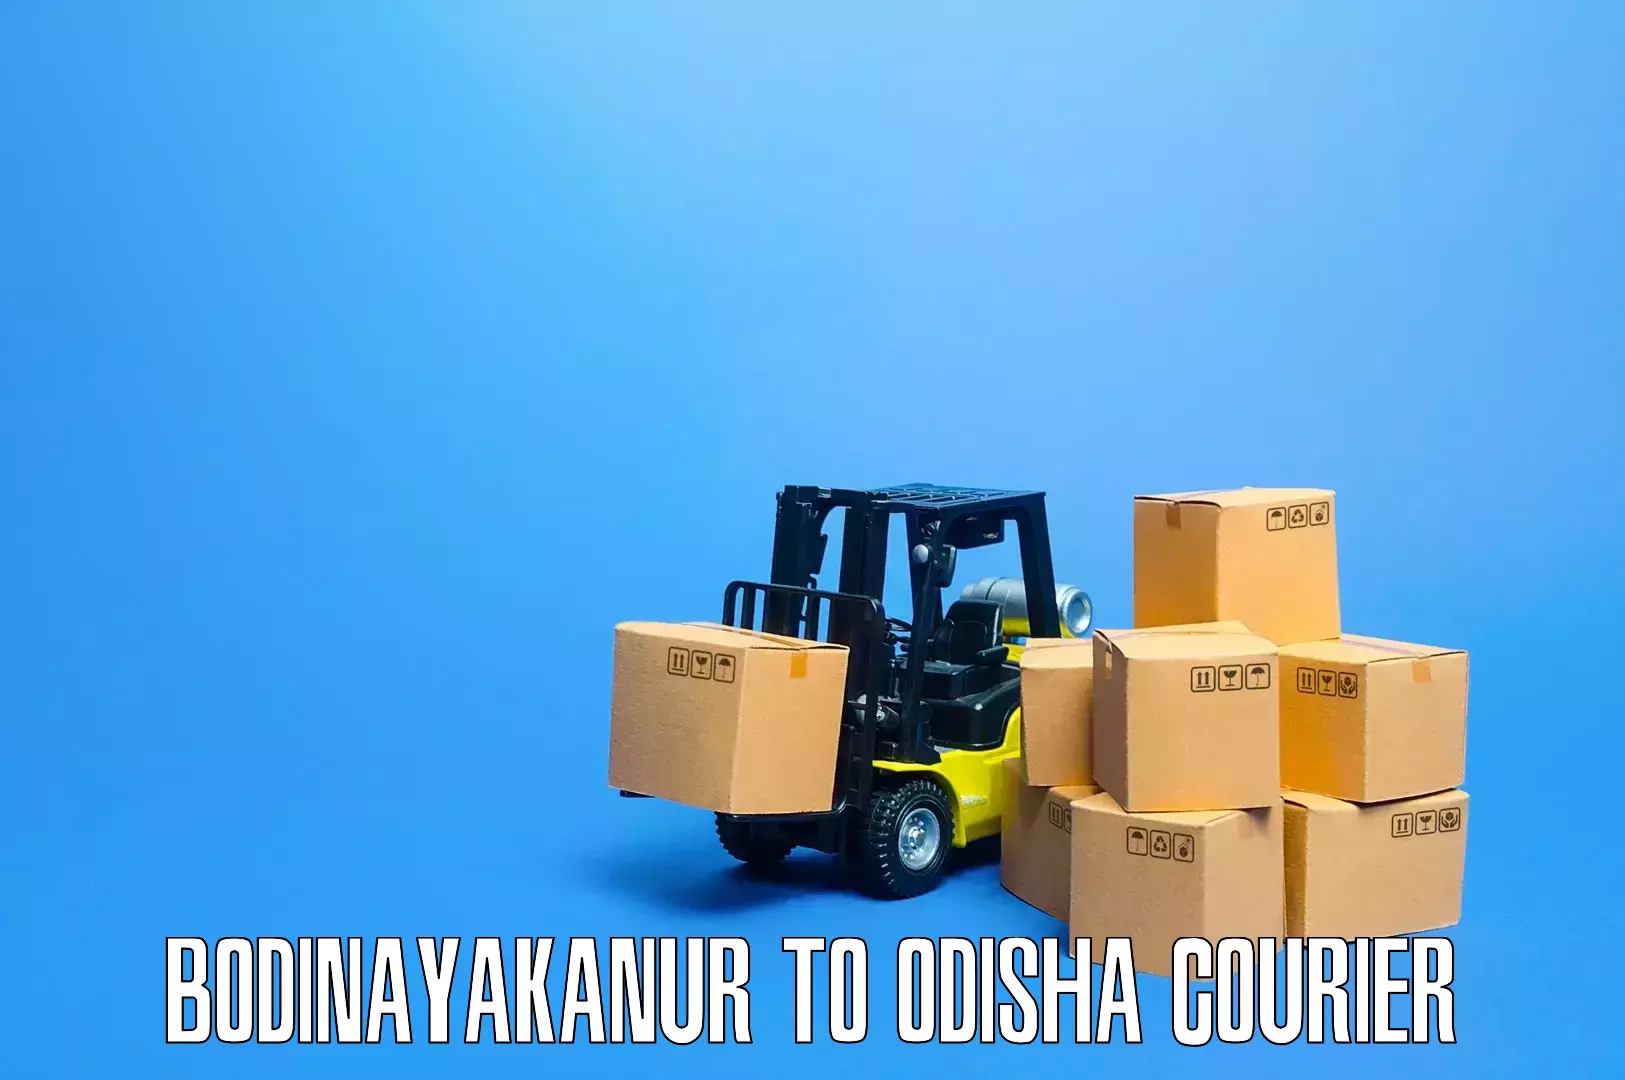 Furniture moving services Bodinayakanur to Bhuban